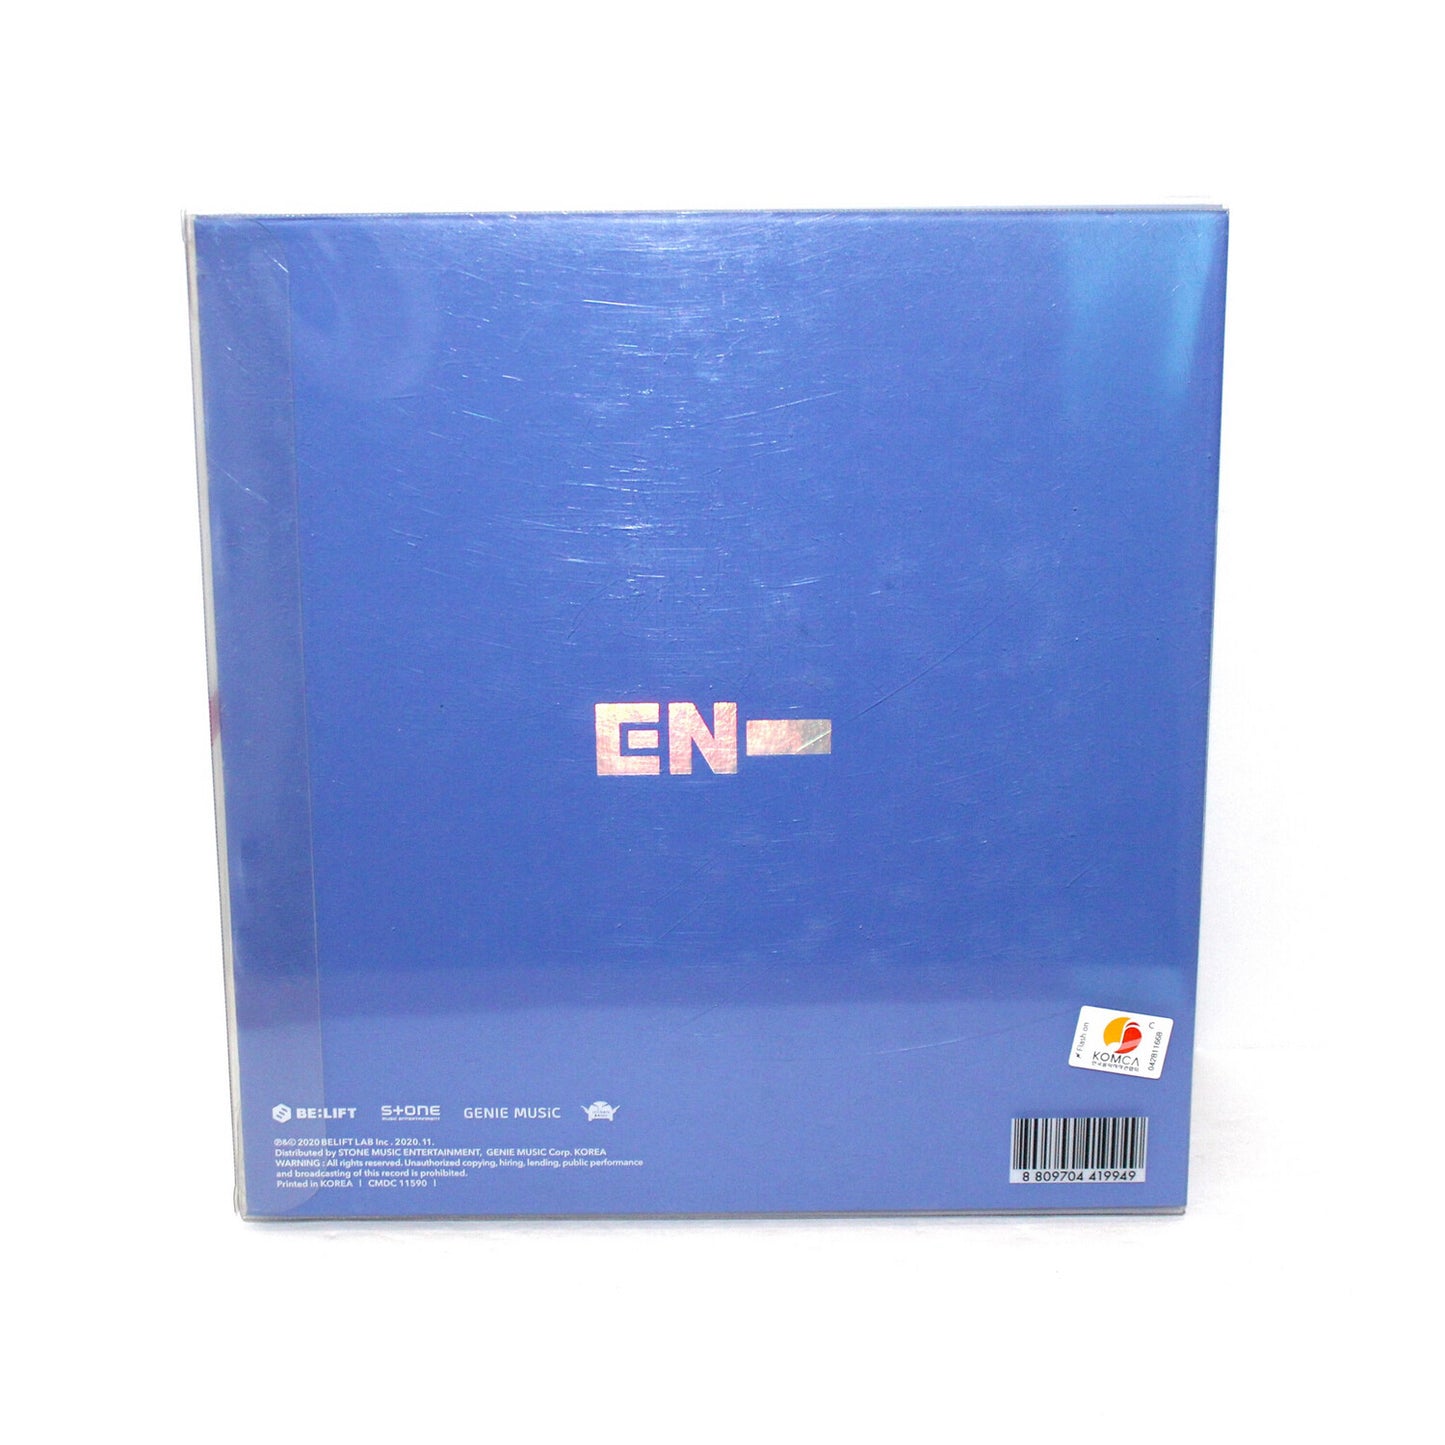 ENHYPEN 1er Mini Album - Border: Day One | Aube Ver.